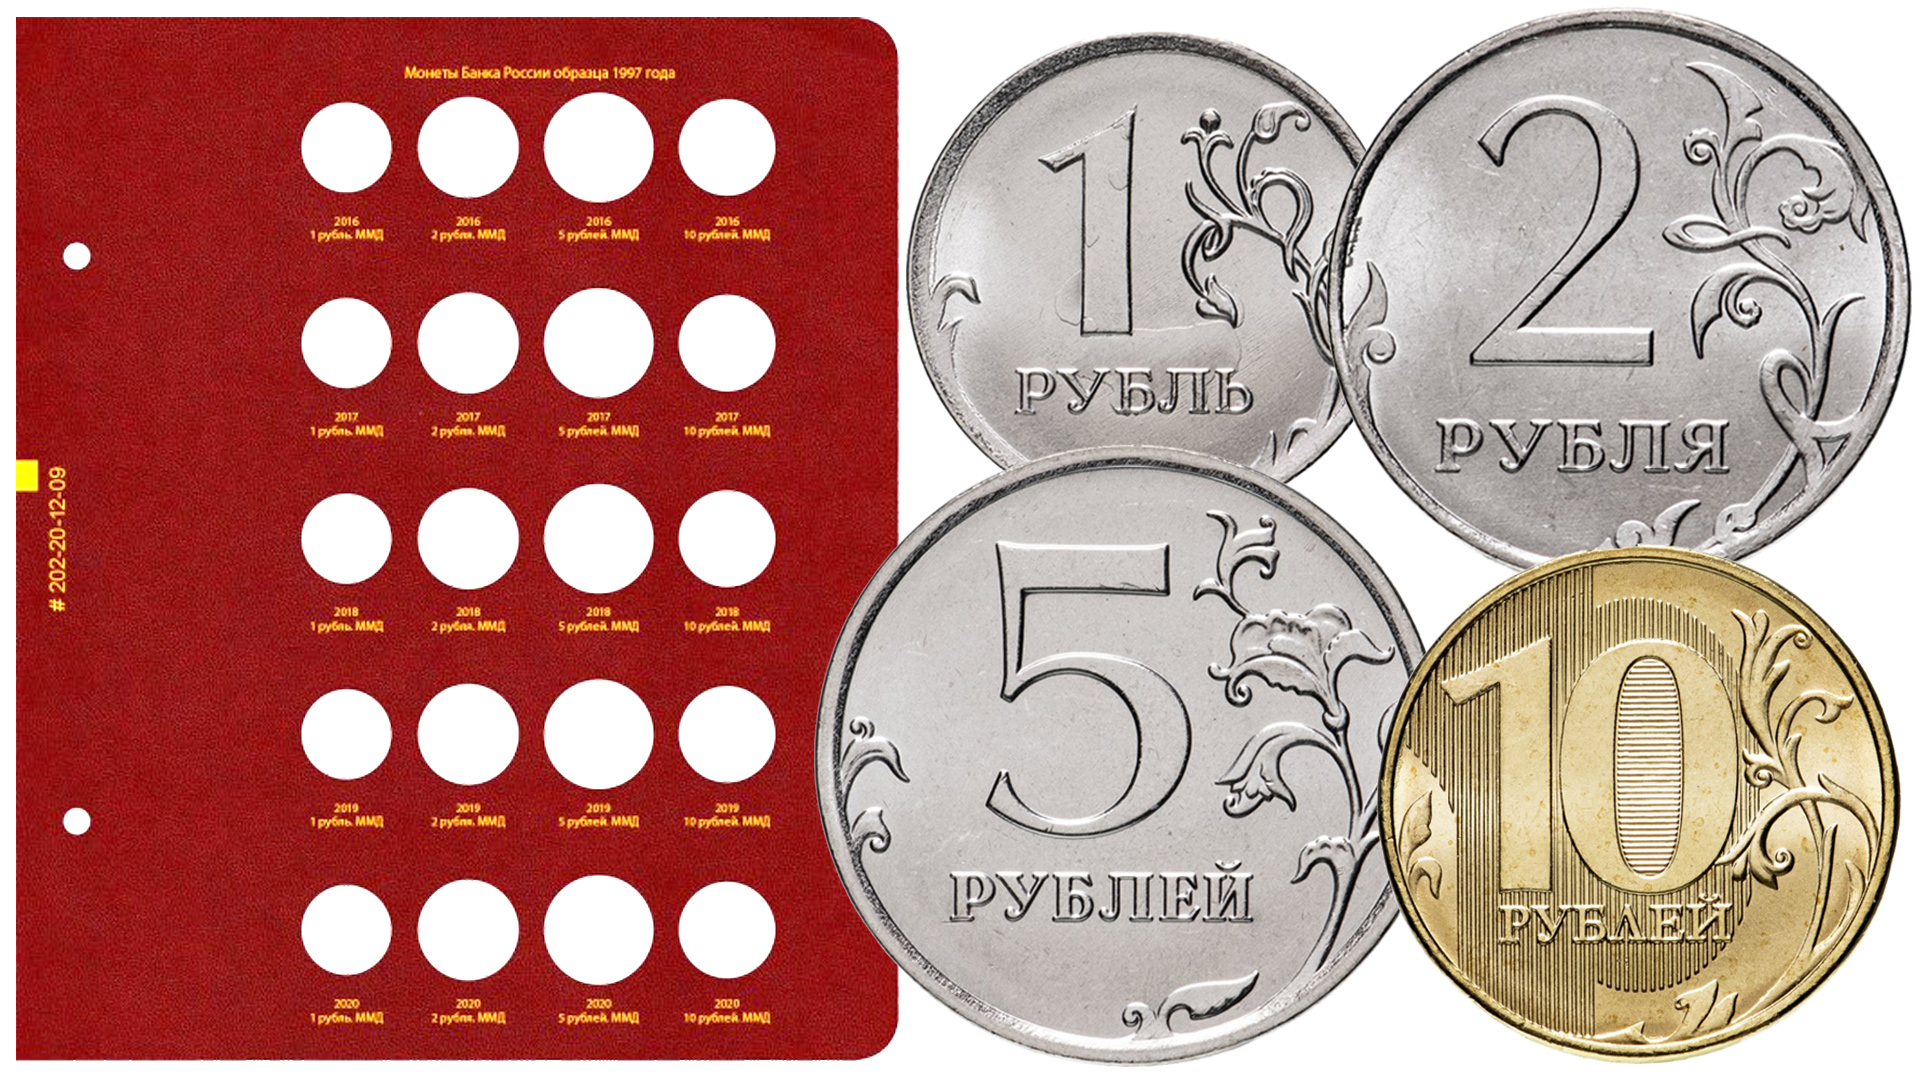 Новый лист в альбом Альбо Нумисматико для регулярных монет России.